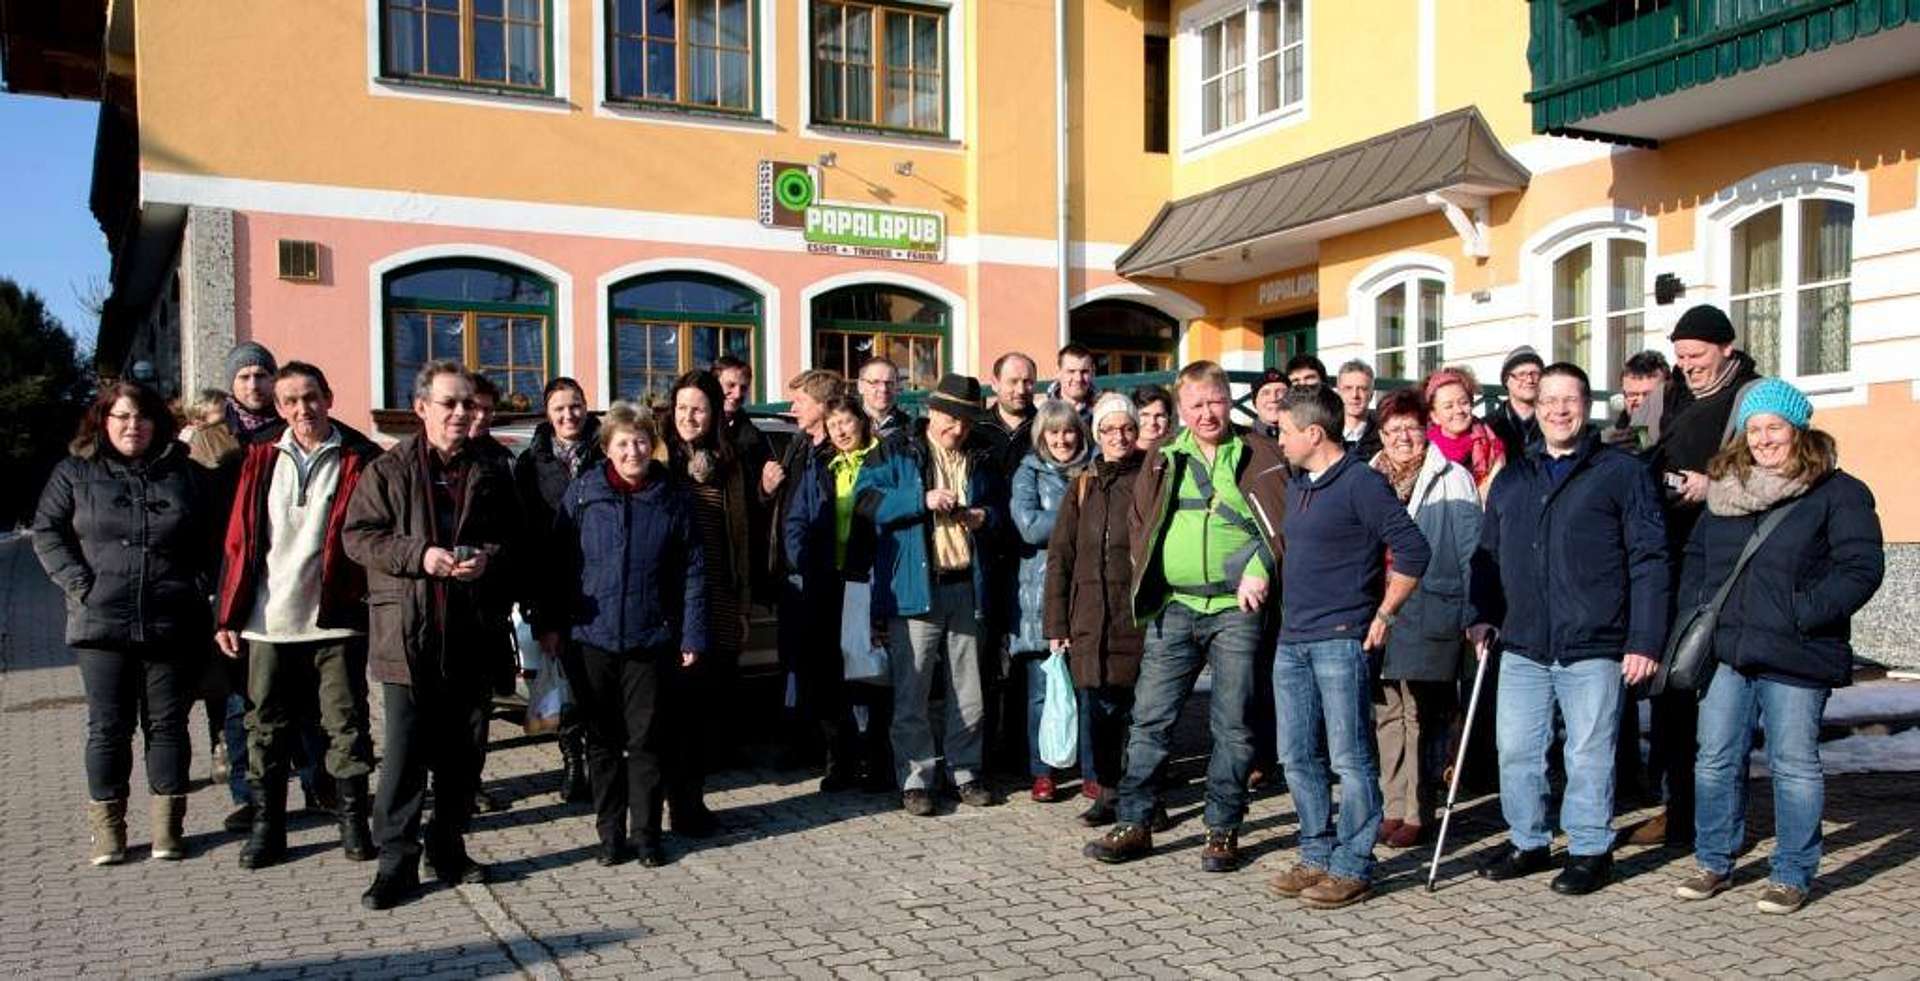 Gruppenfoto der ca. 40 Teilnehmerinnen vor einem Gasthaus